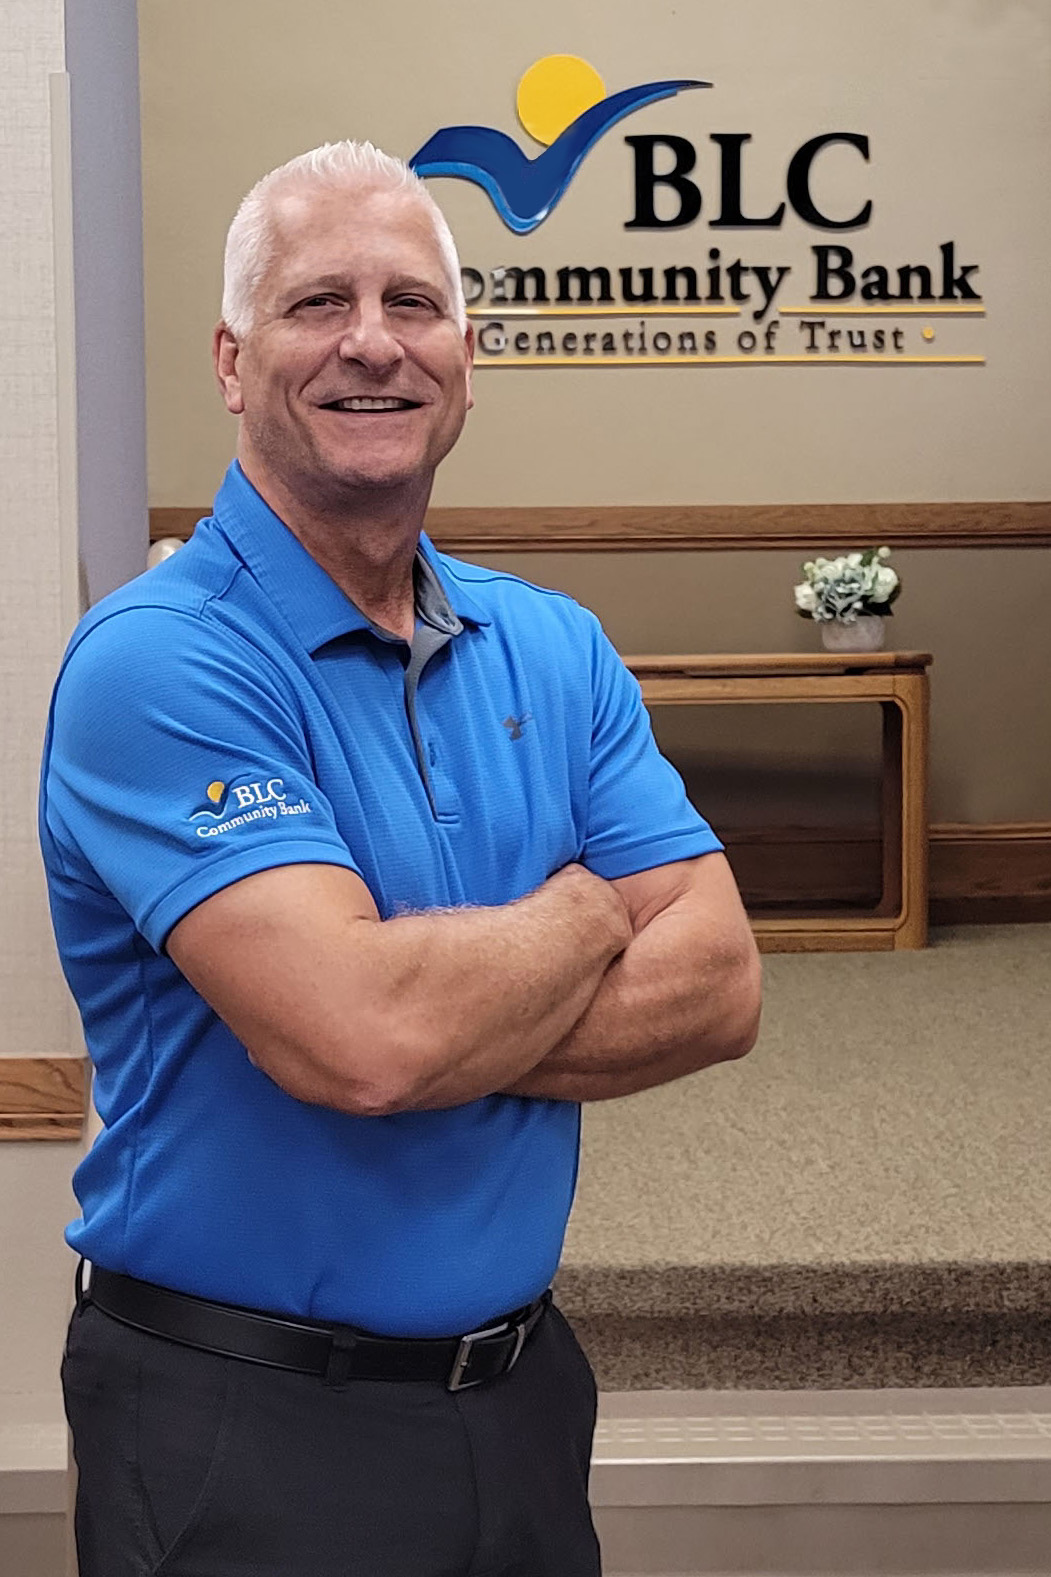 Dennis Hietpas, VP - Commercial Lending at BLC Community Bank